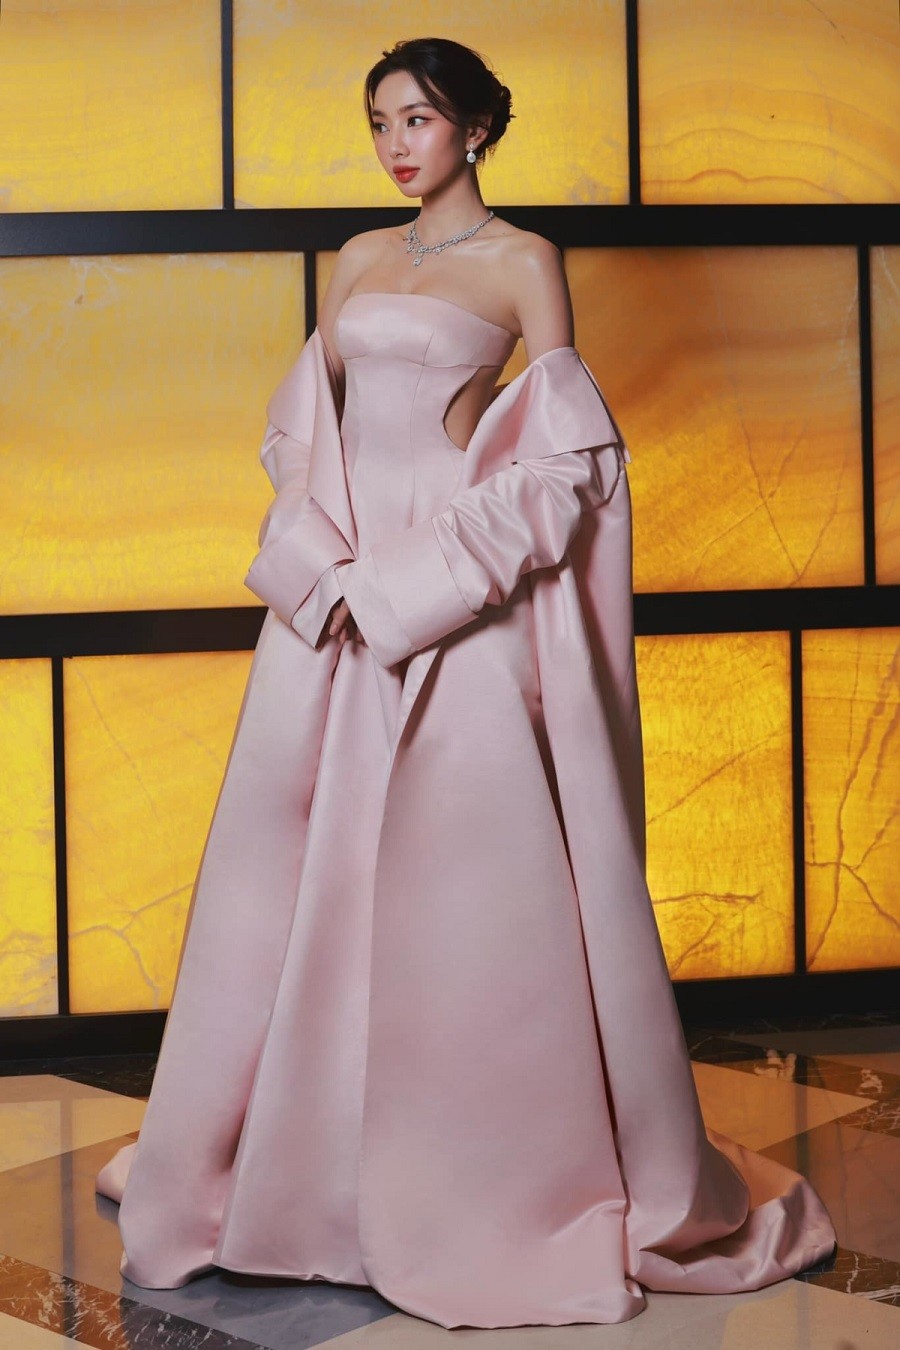 Góp mặt trong 1 sự kiện thuộc khuôn khổ Liên hoan phim quốc tế Busan tại Hàn Quốc, Hoa hậu Thùy Tiên được khen lộng lẫy với trang phục dạ hội của NTK Đỗ Long làm từ chất liệu taffeta cao cấp.